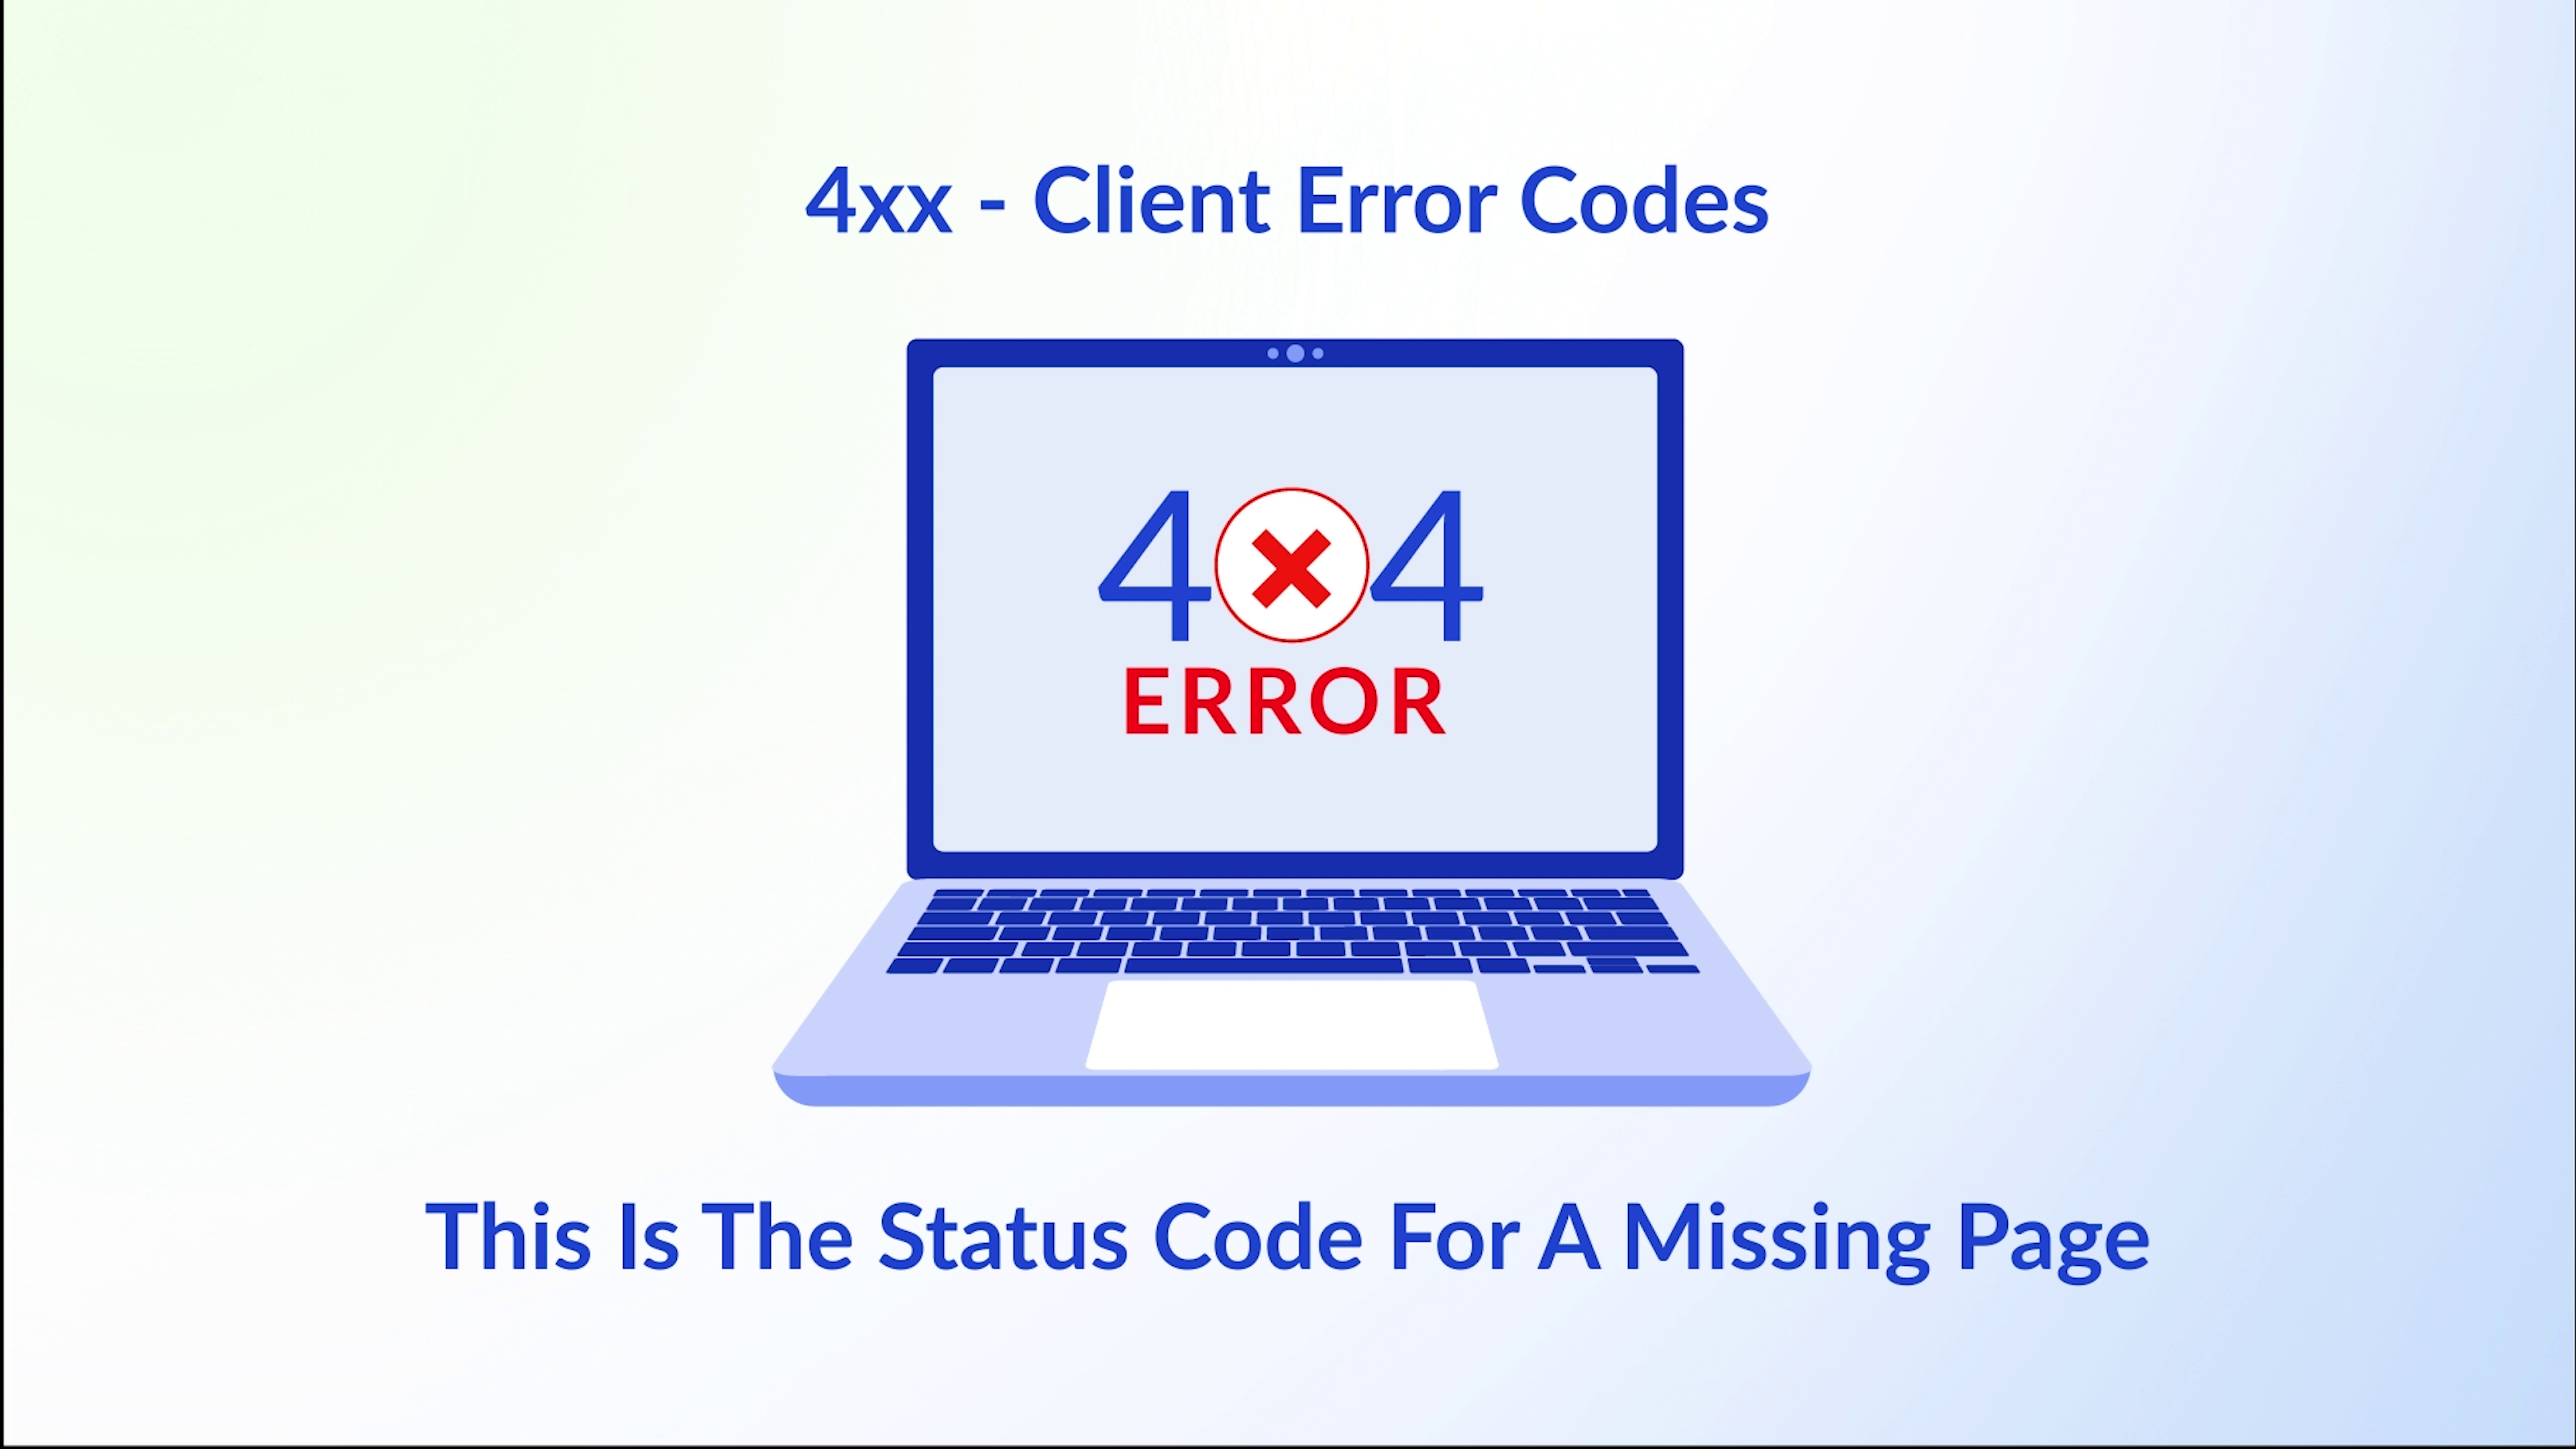 A 404 Error Page